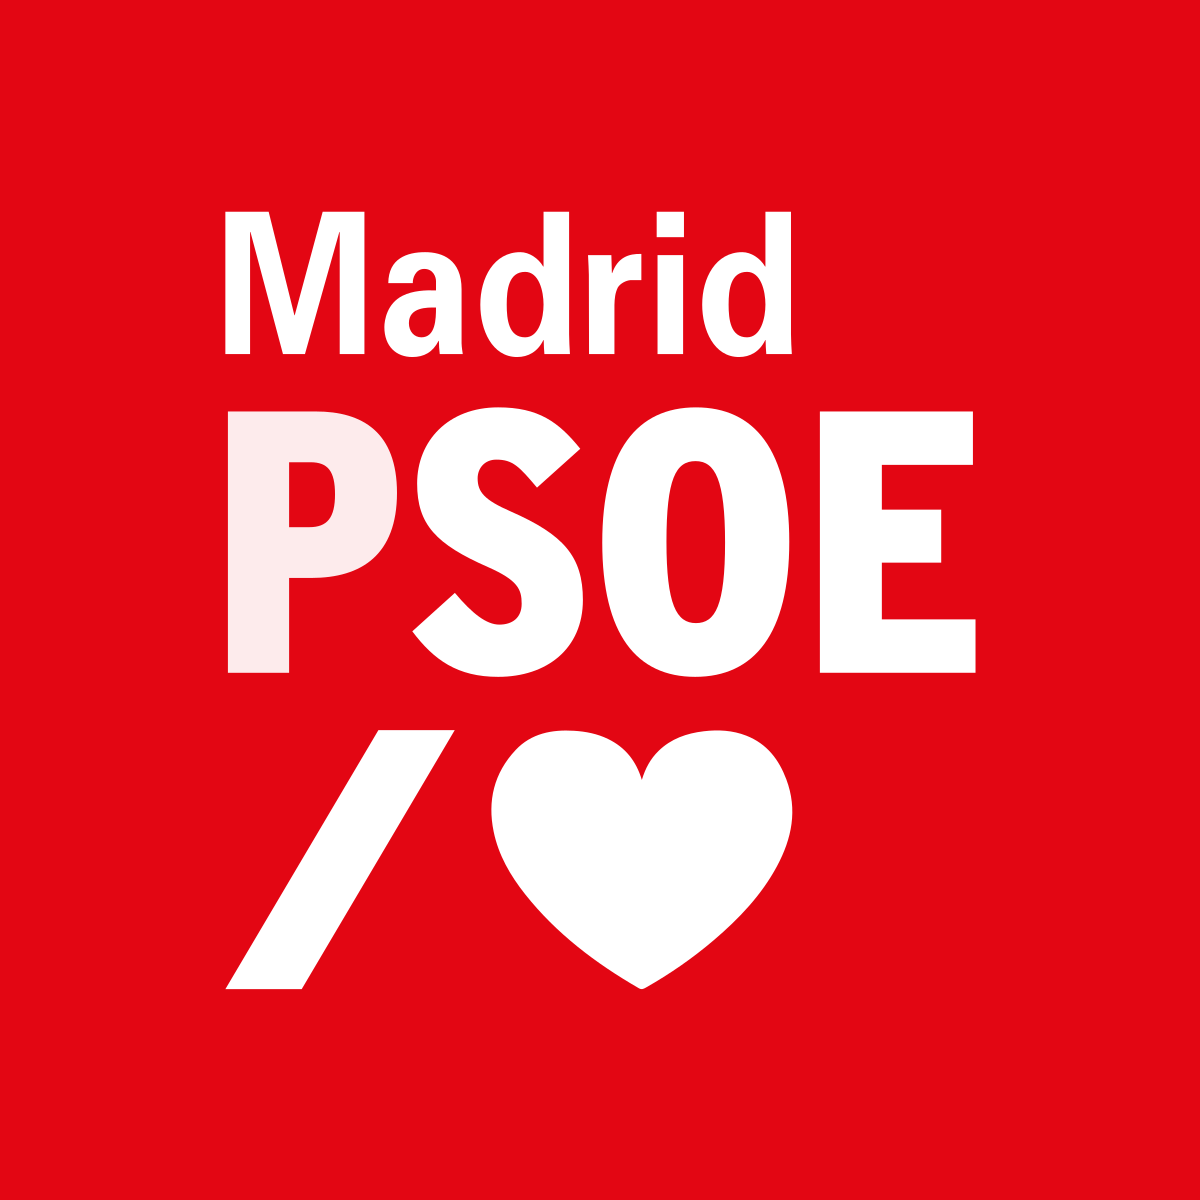 Quién traiciona al PSOE?